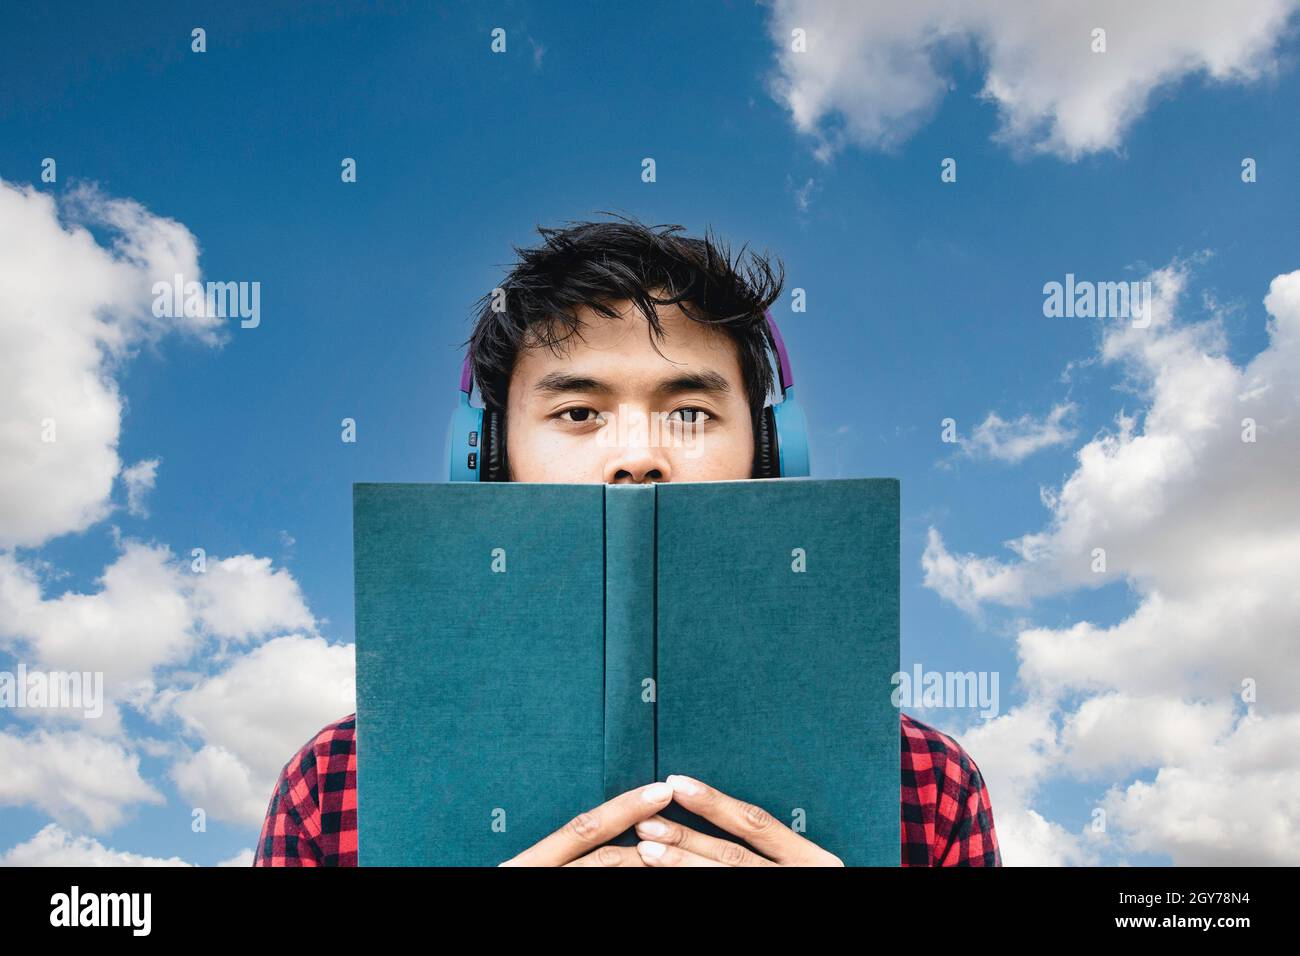 Jeunes asiatiques lisant un livre ou écoutant un livre audio contre un ciel bleu et des nuages - influenceur social asiatique s'amusant avec les nouvelles tendances de la technologie oppo Banque D'Images